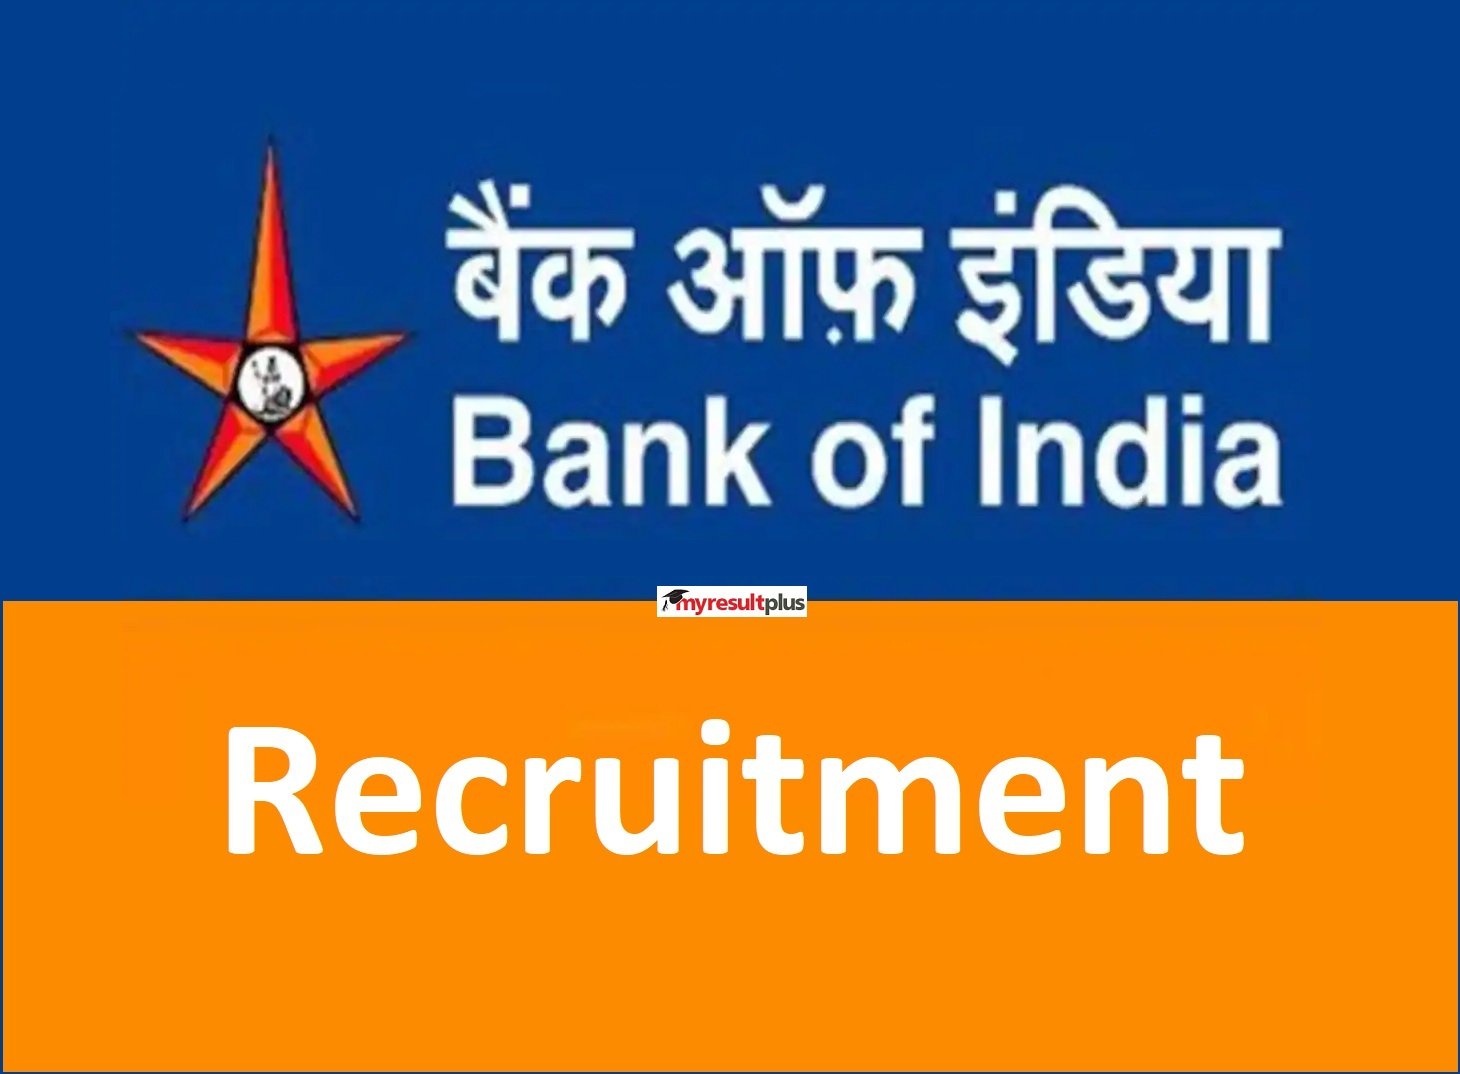 EMPLOYMENT : बैंक ऑफ इंडिया ने निकाली बंपर वैकेंसी, करें नौकरी, पाएं शानदार सैलरी, 26 अप्रैल से 10 मई तक..